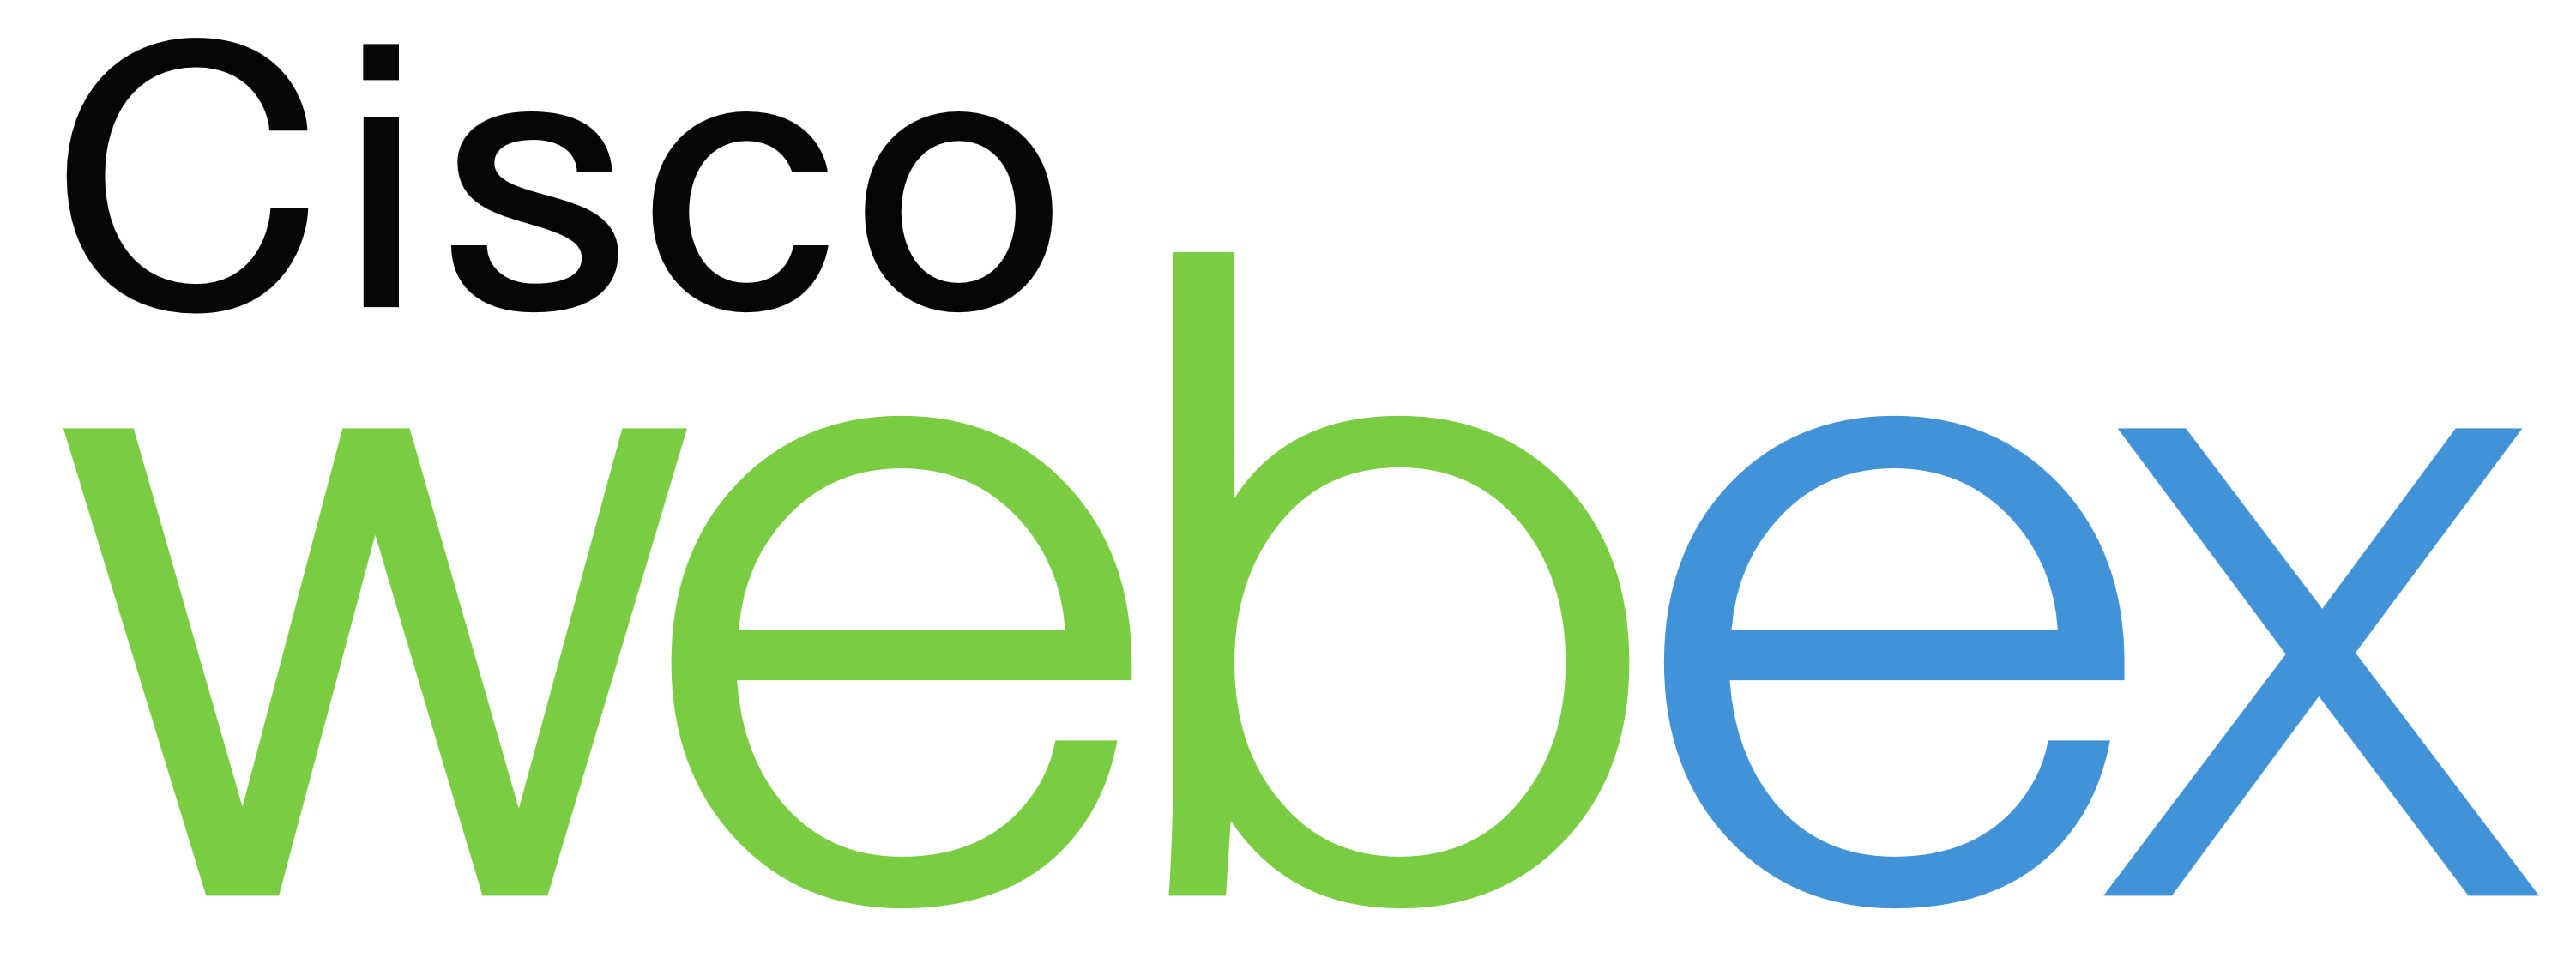 Cisco WebEx Logo - Cisco WebEx